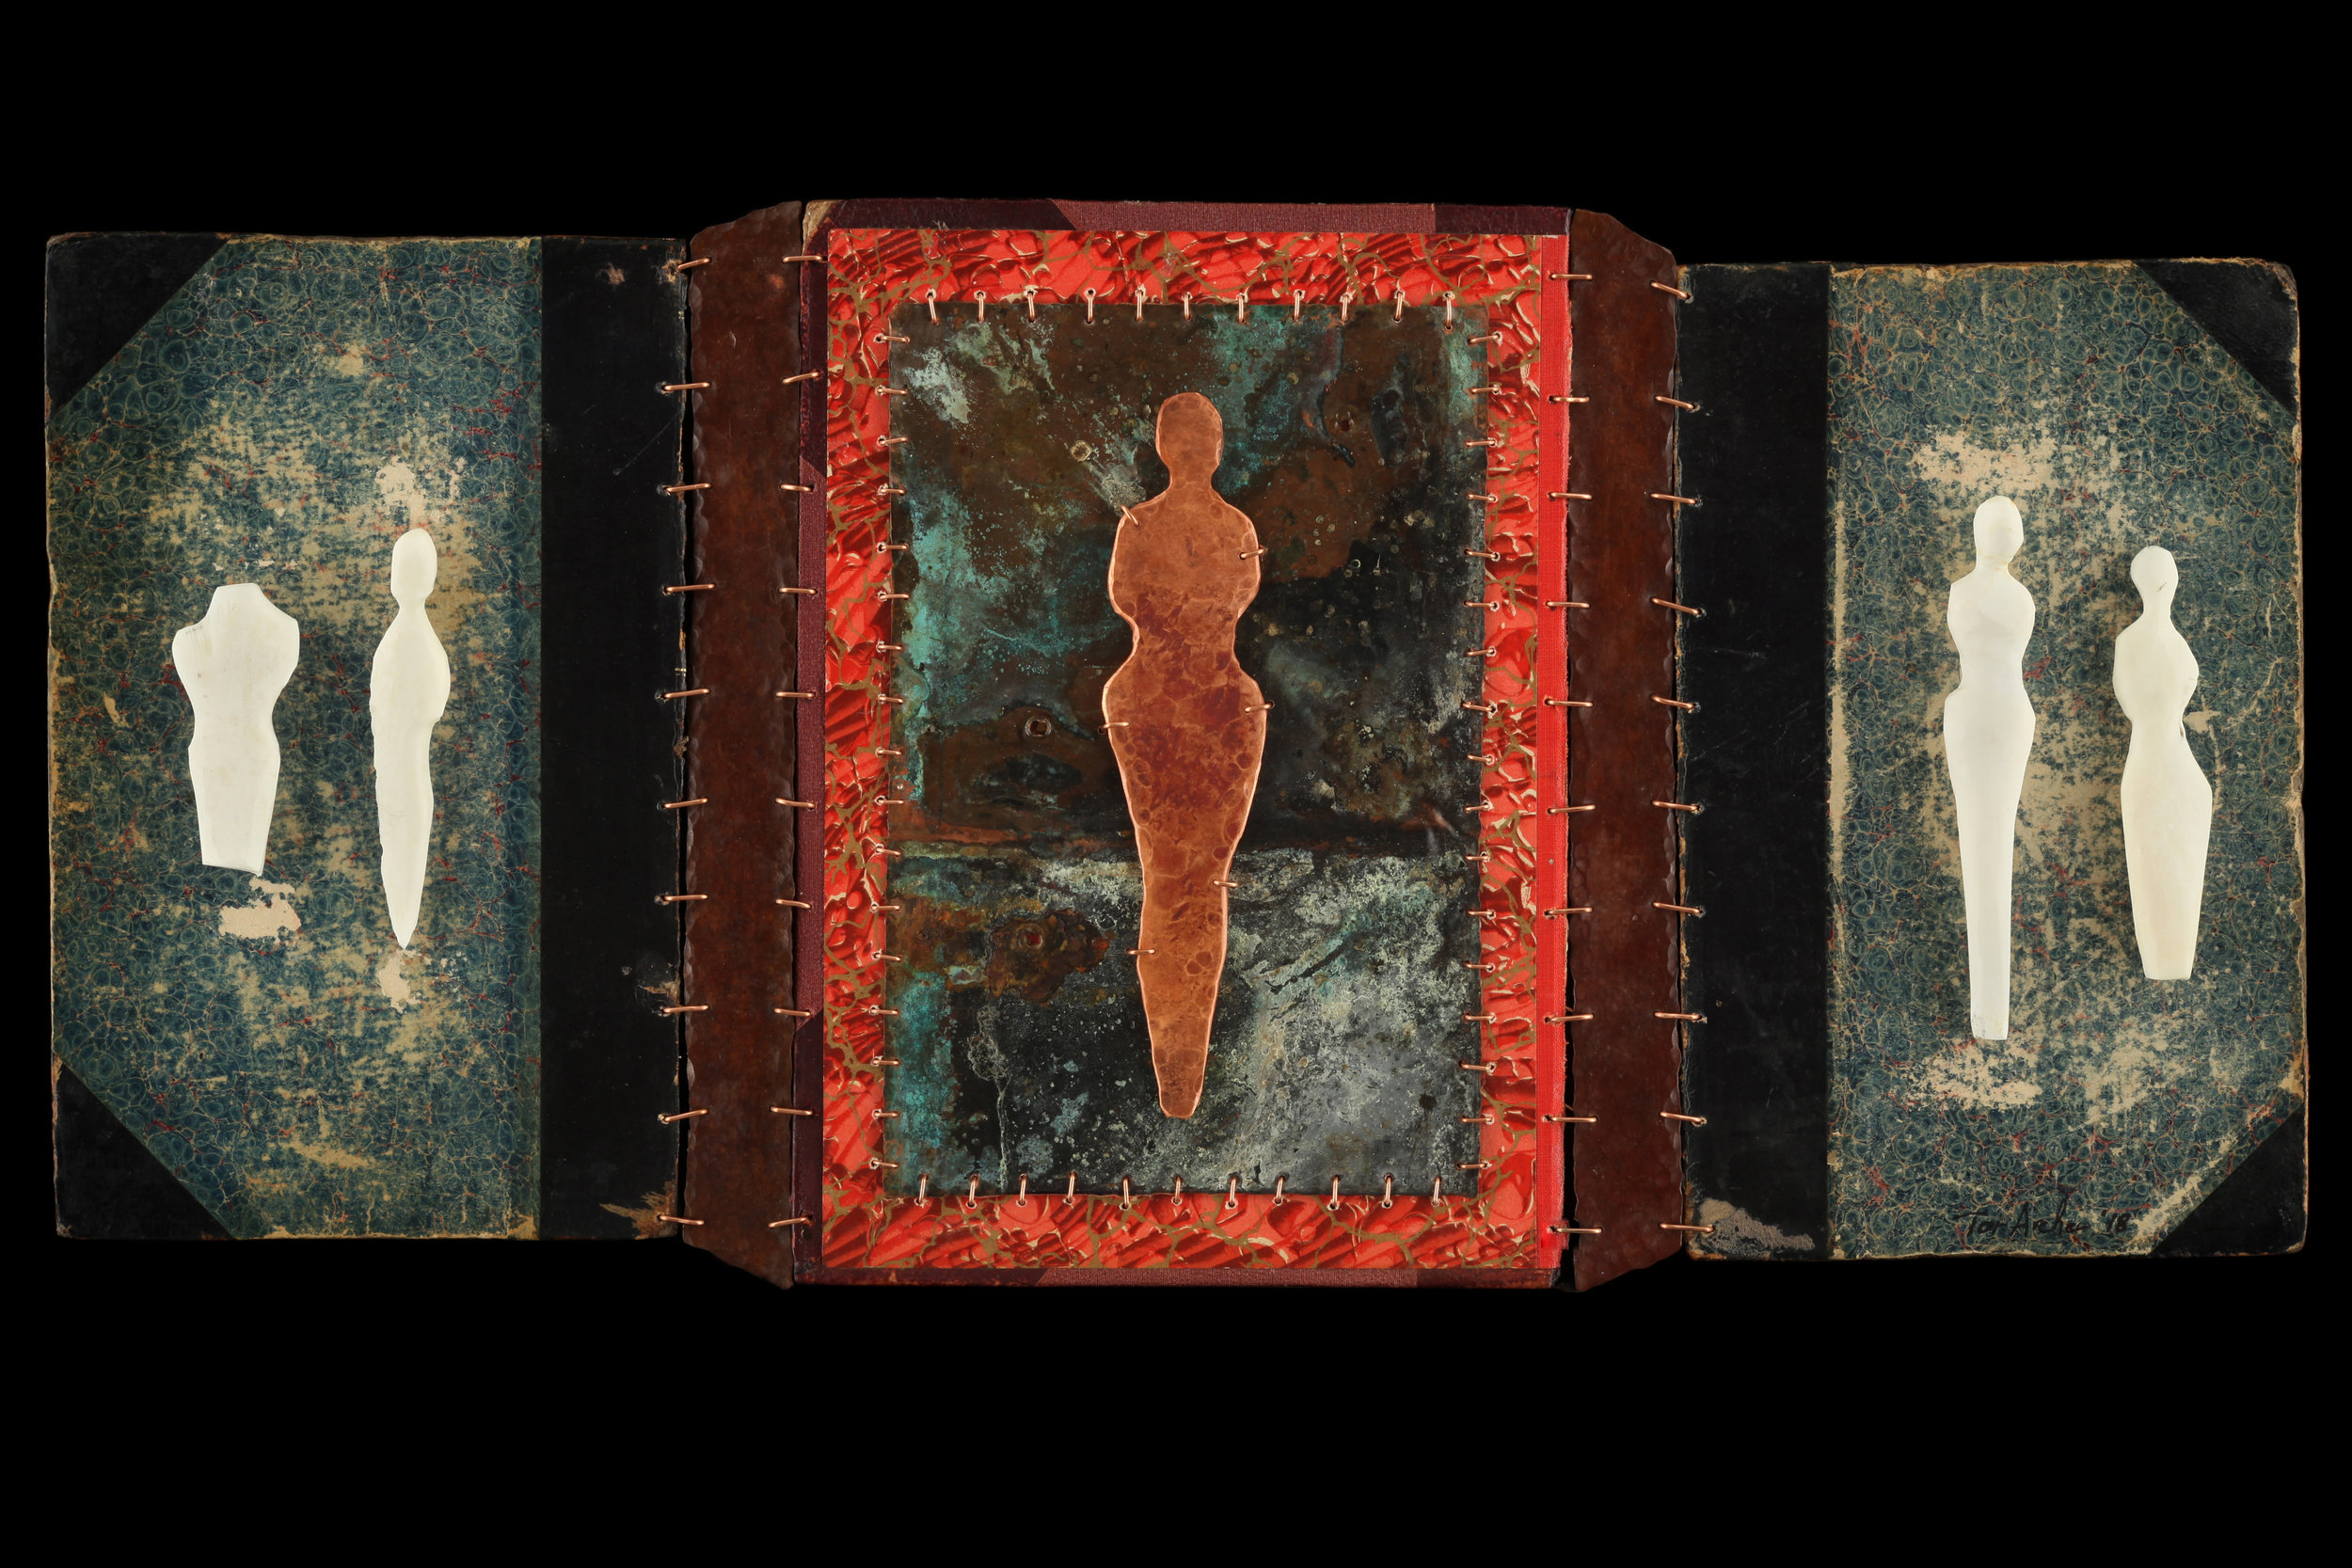  2018  Copper, Bone, Book Covers  10.5”x22” 